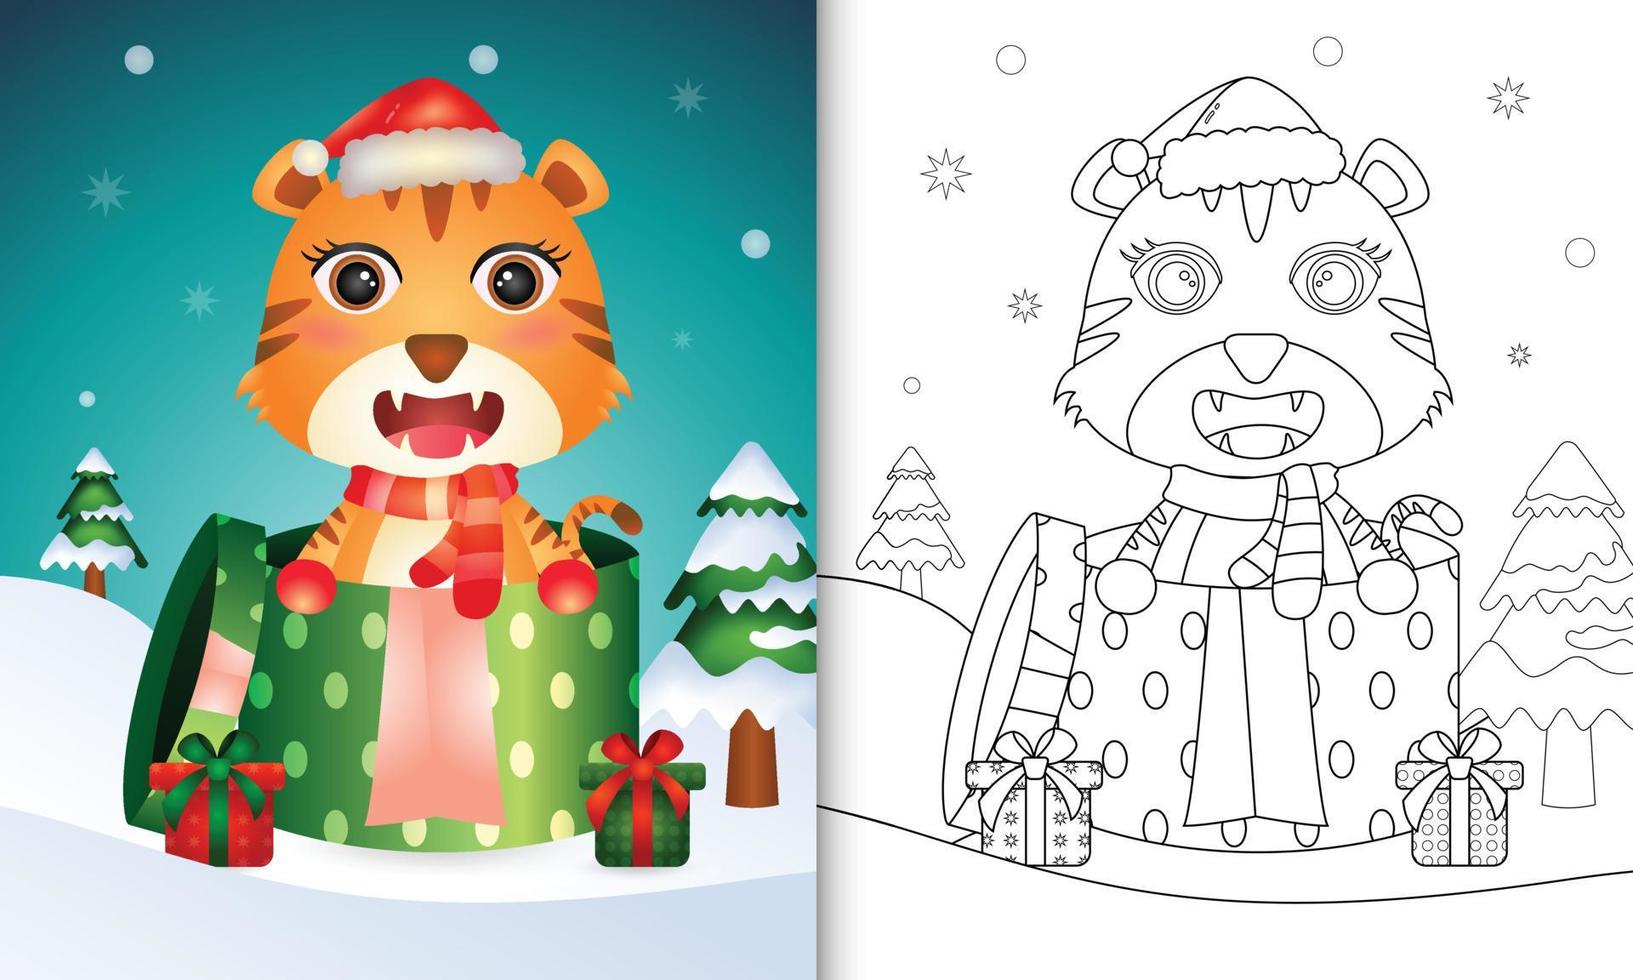 livro de colorir com personagens de natal de um tigre fofo usando chapéu de papai noel e cachecol na caixa de presente vetor